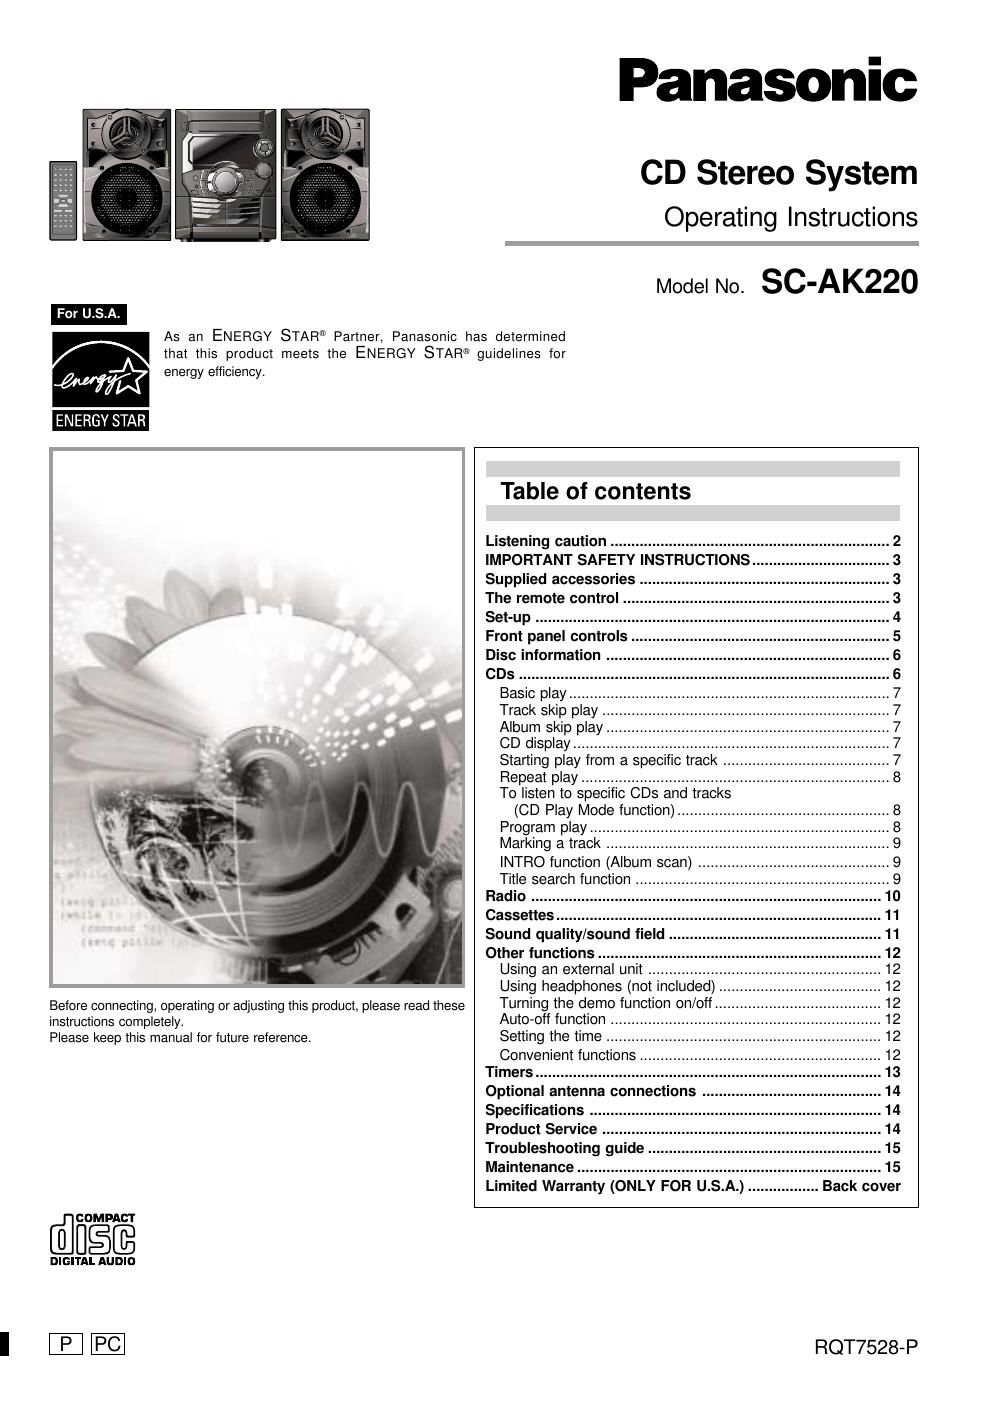 panasonic sc ak 220 owners manual